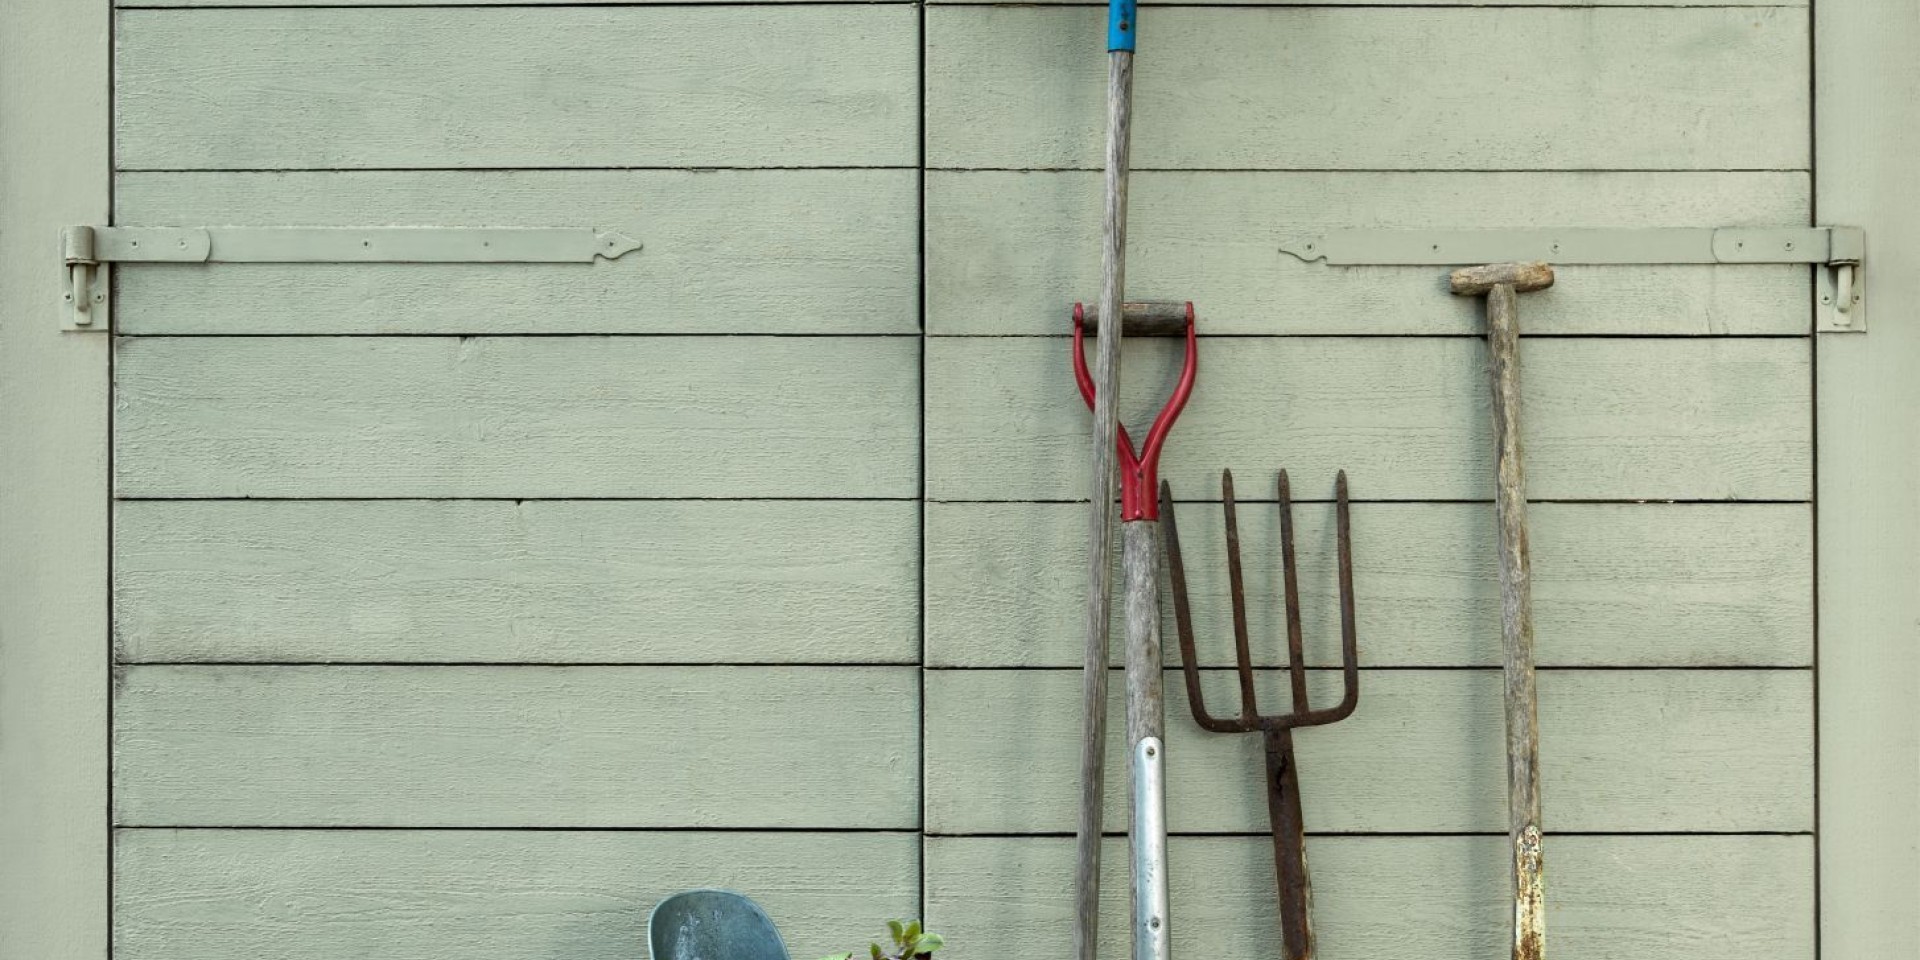 Utomhusfasad med olika verktyg framför dörren